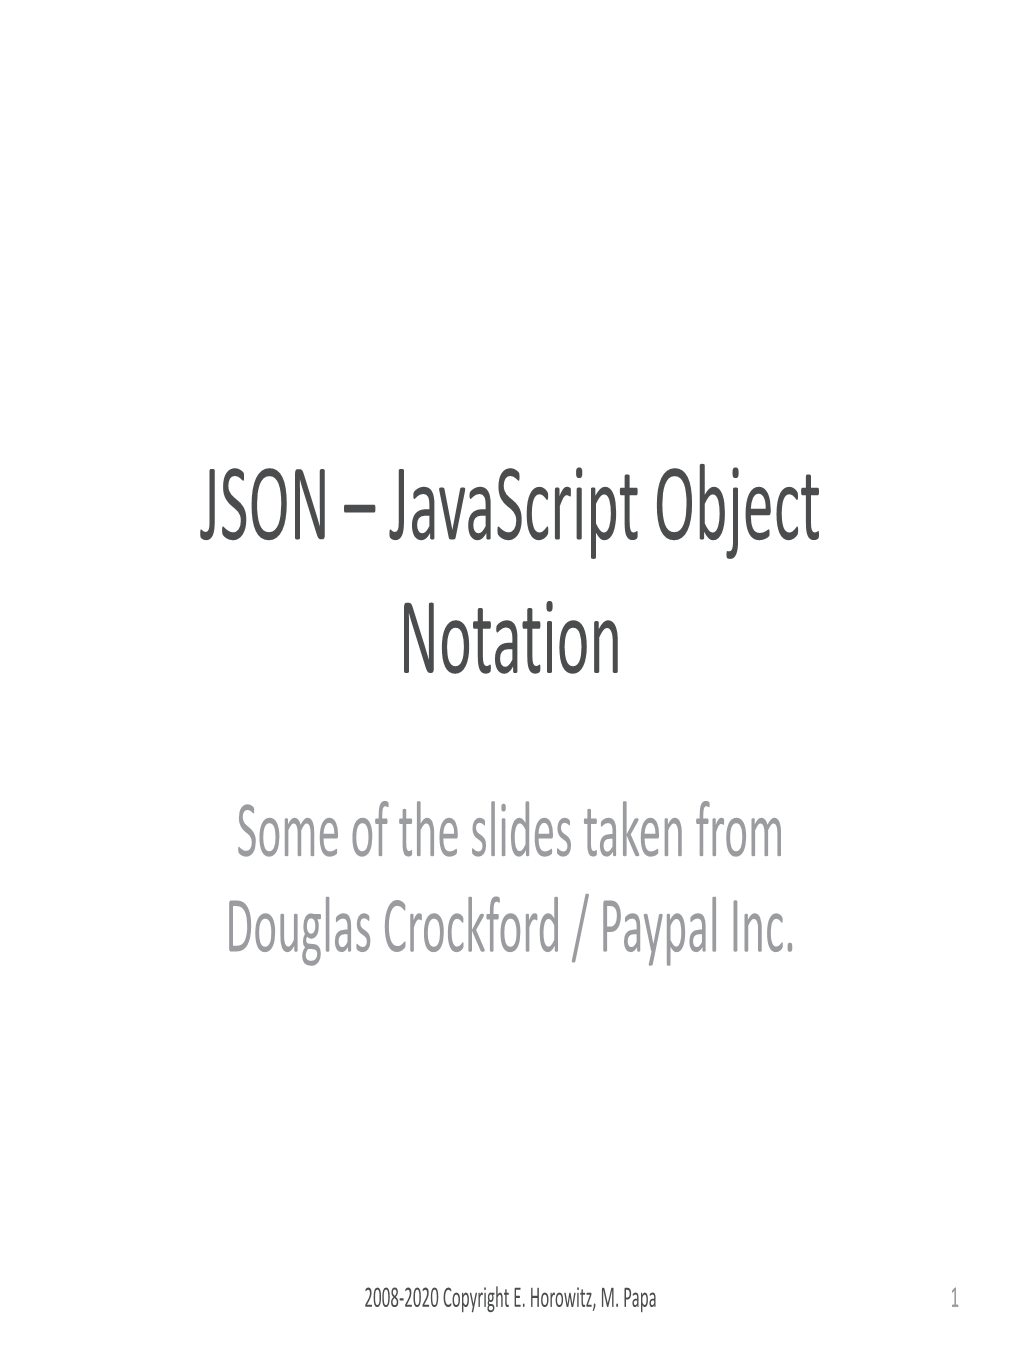 JSON / Javascript Object Notation